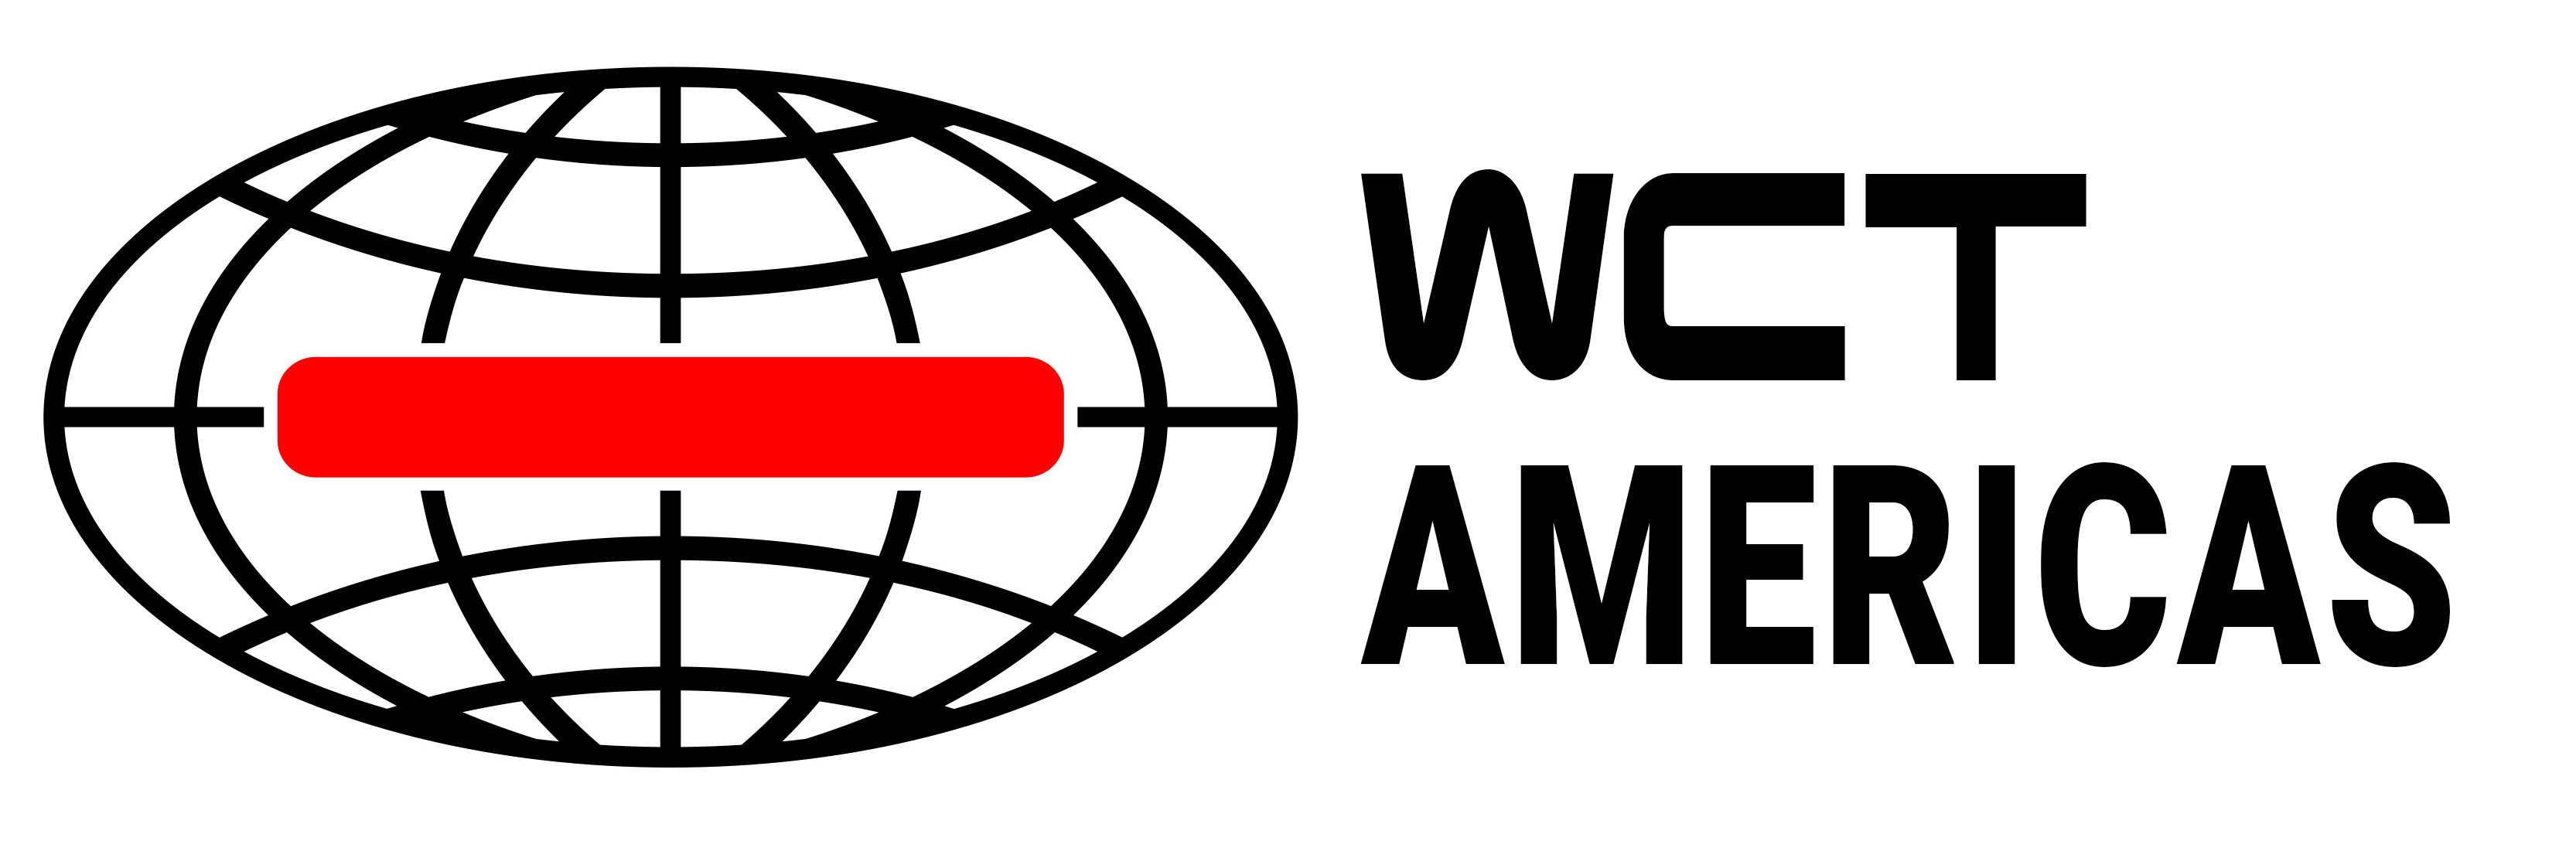 WCT Americas